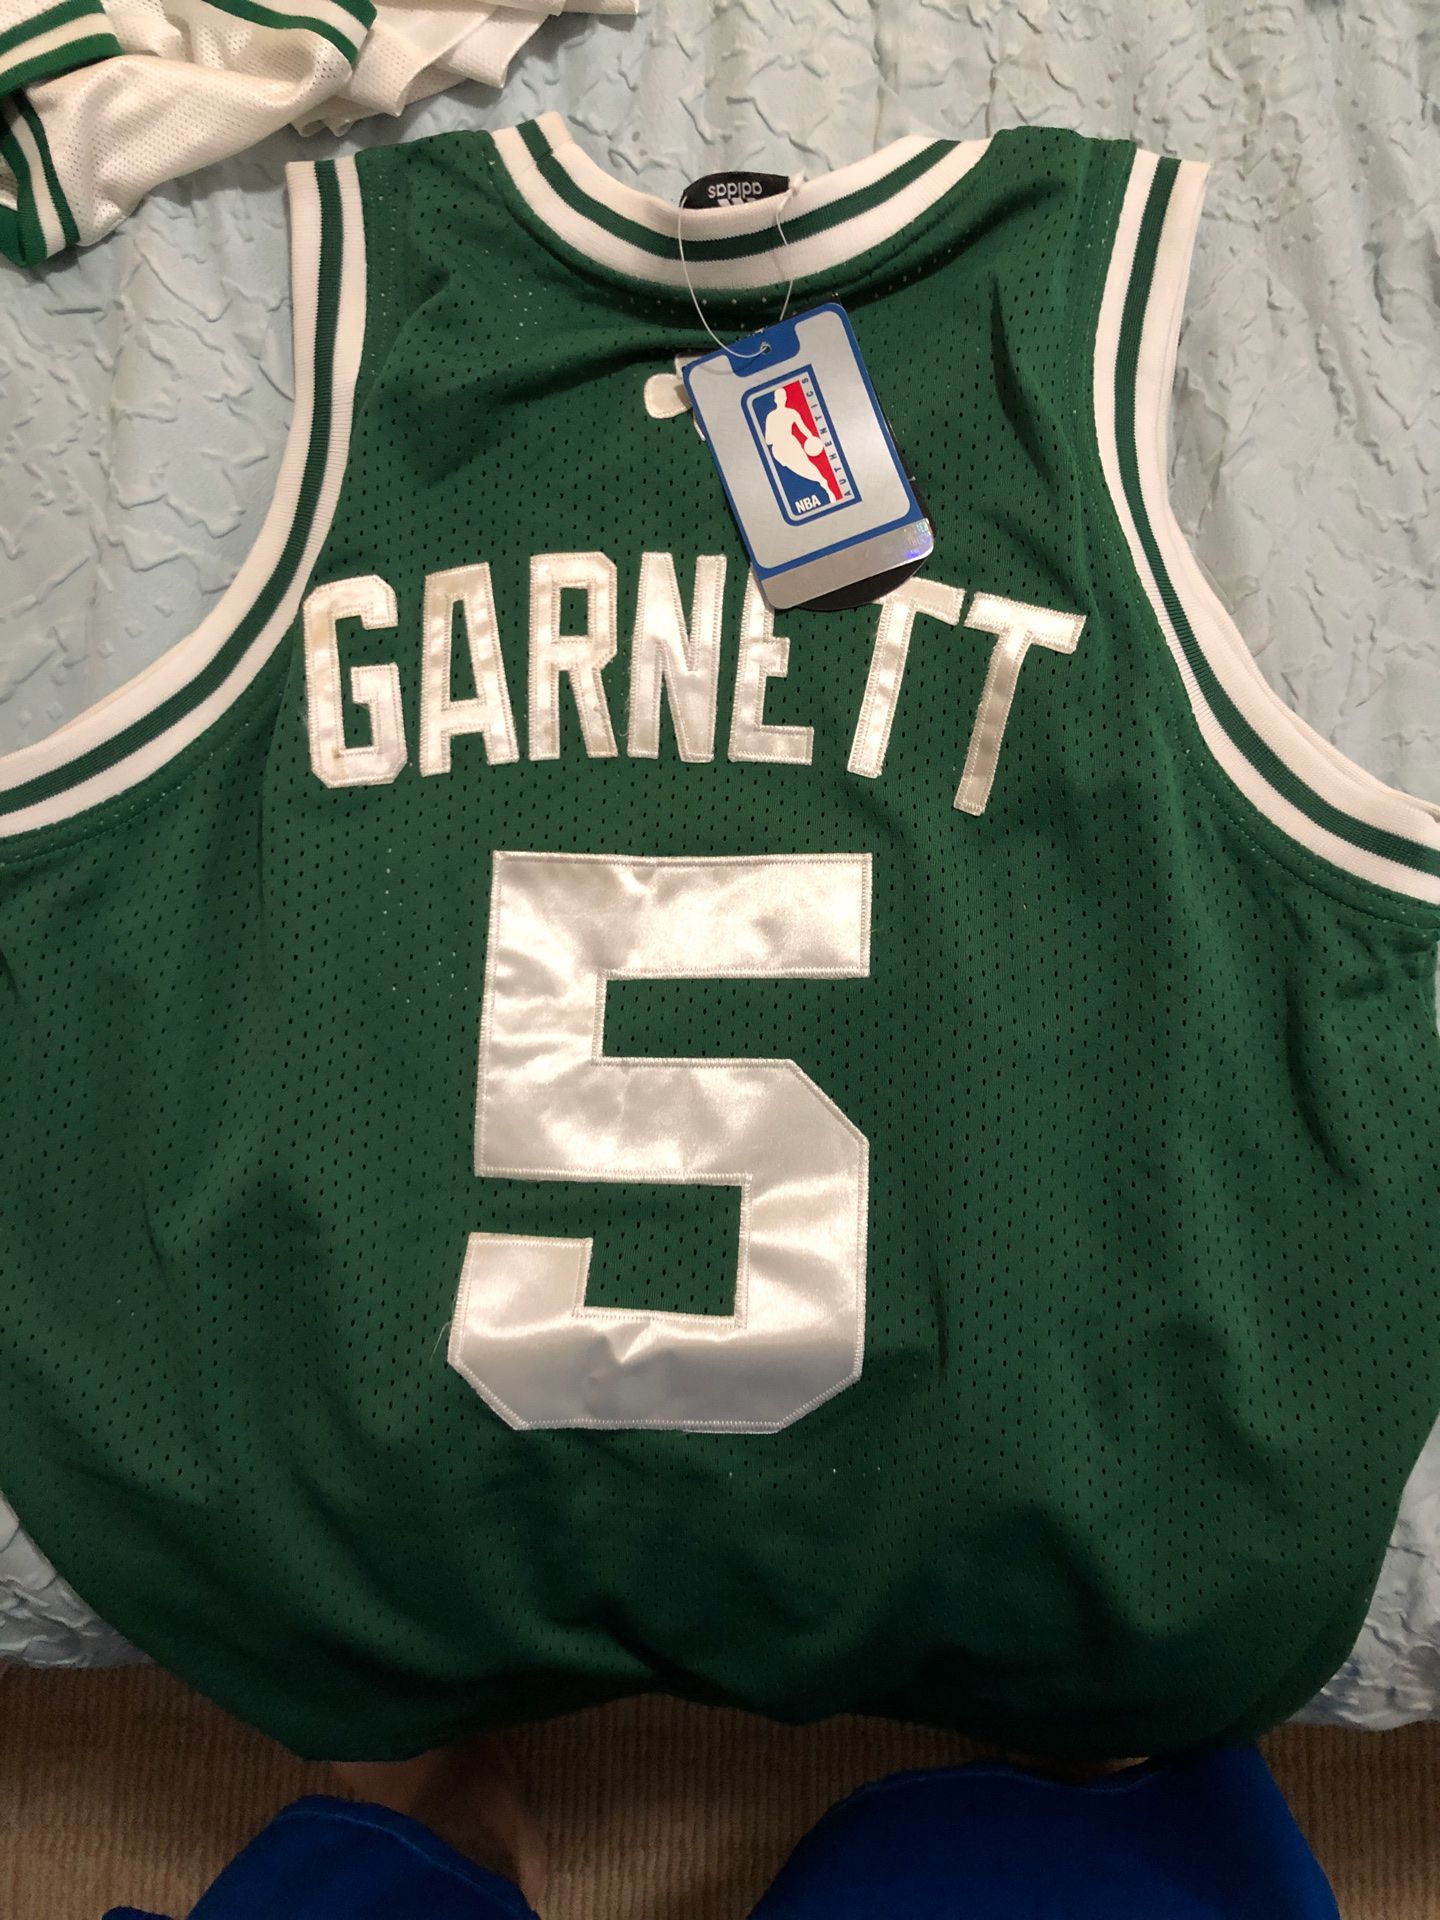 Celtics jersey Garnett medium